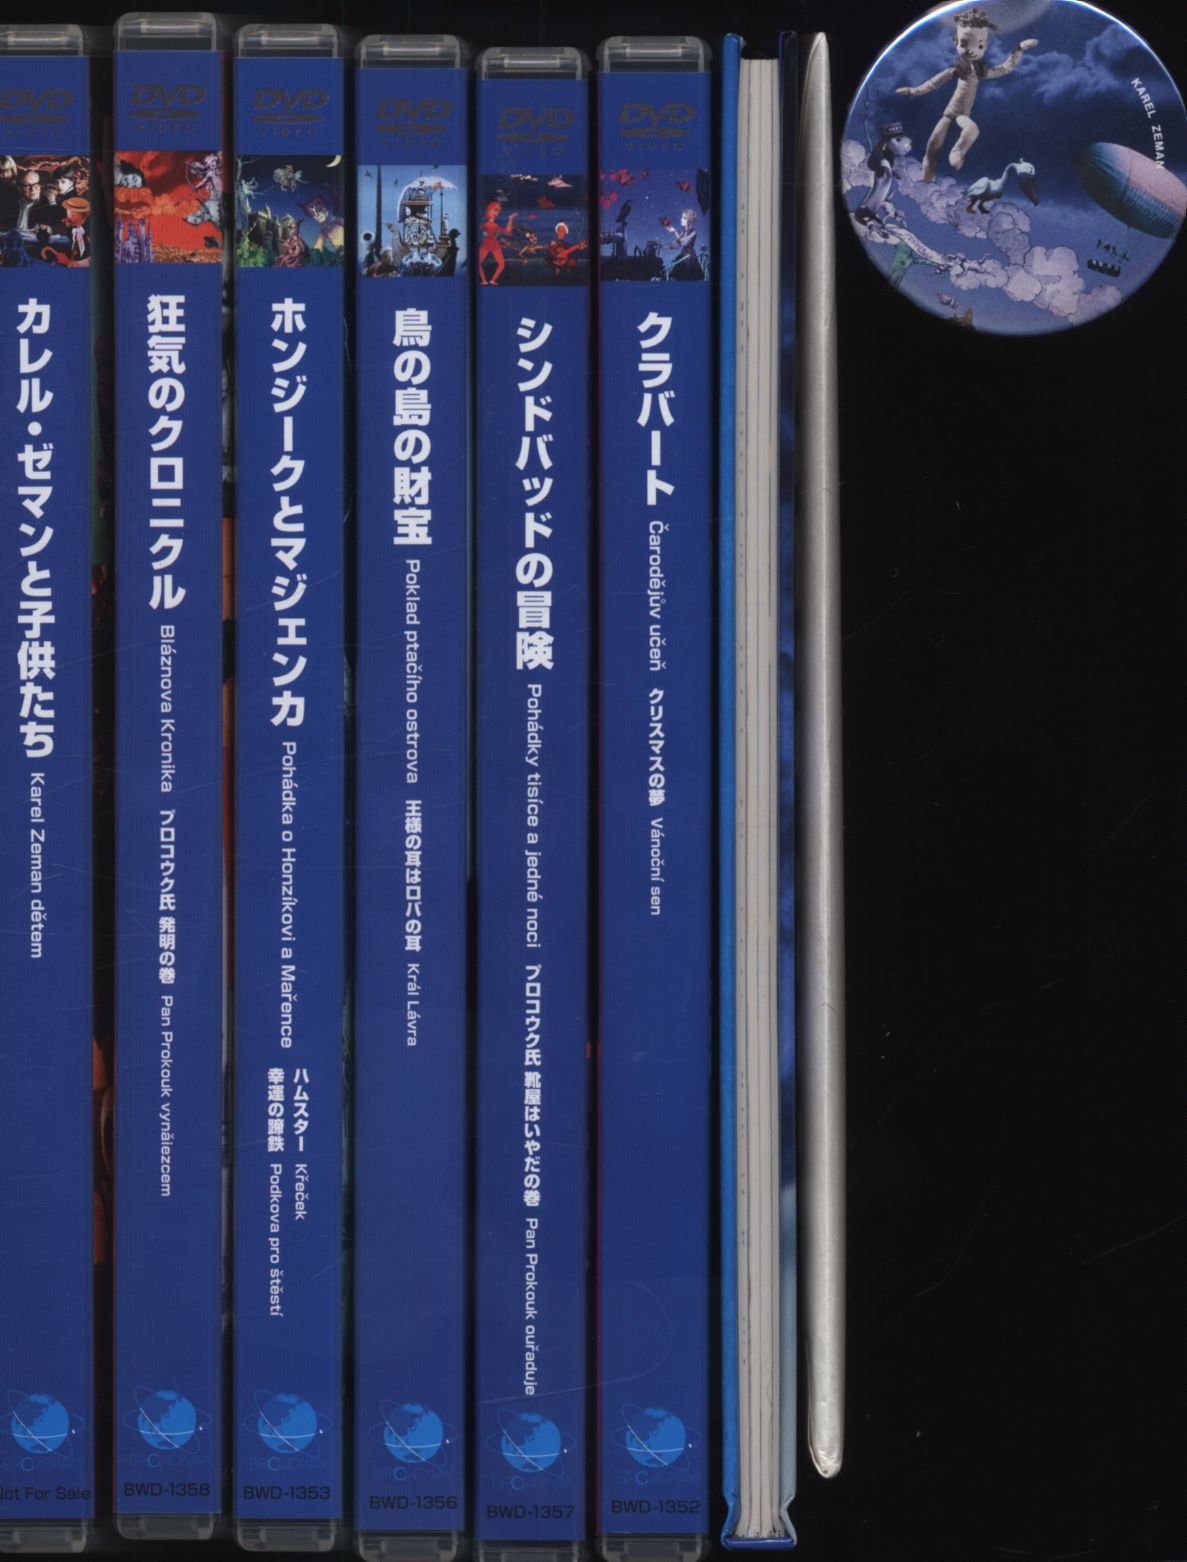 大好き BOX- COLLECTOR´S ZEMAN⭐️DVD 幻想の魔術師 KAREL カレル・マゼン カレル・ゼマン カレル・ゼマン DVD  コレクターズBOX DVD